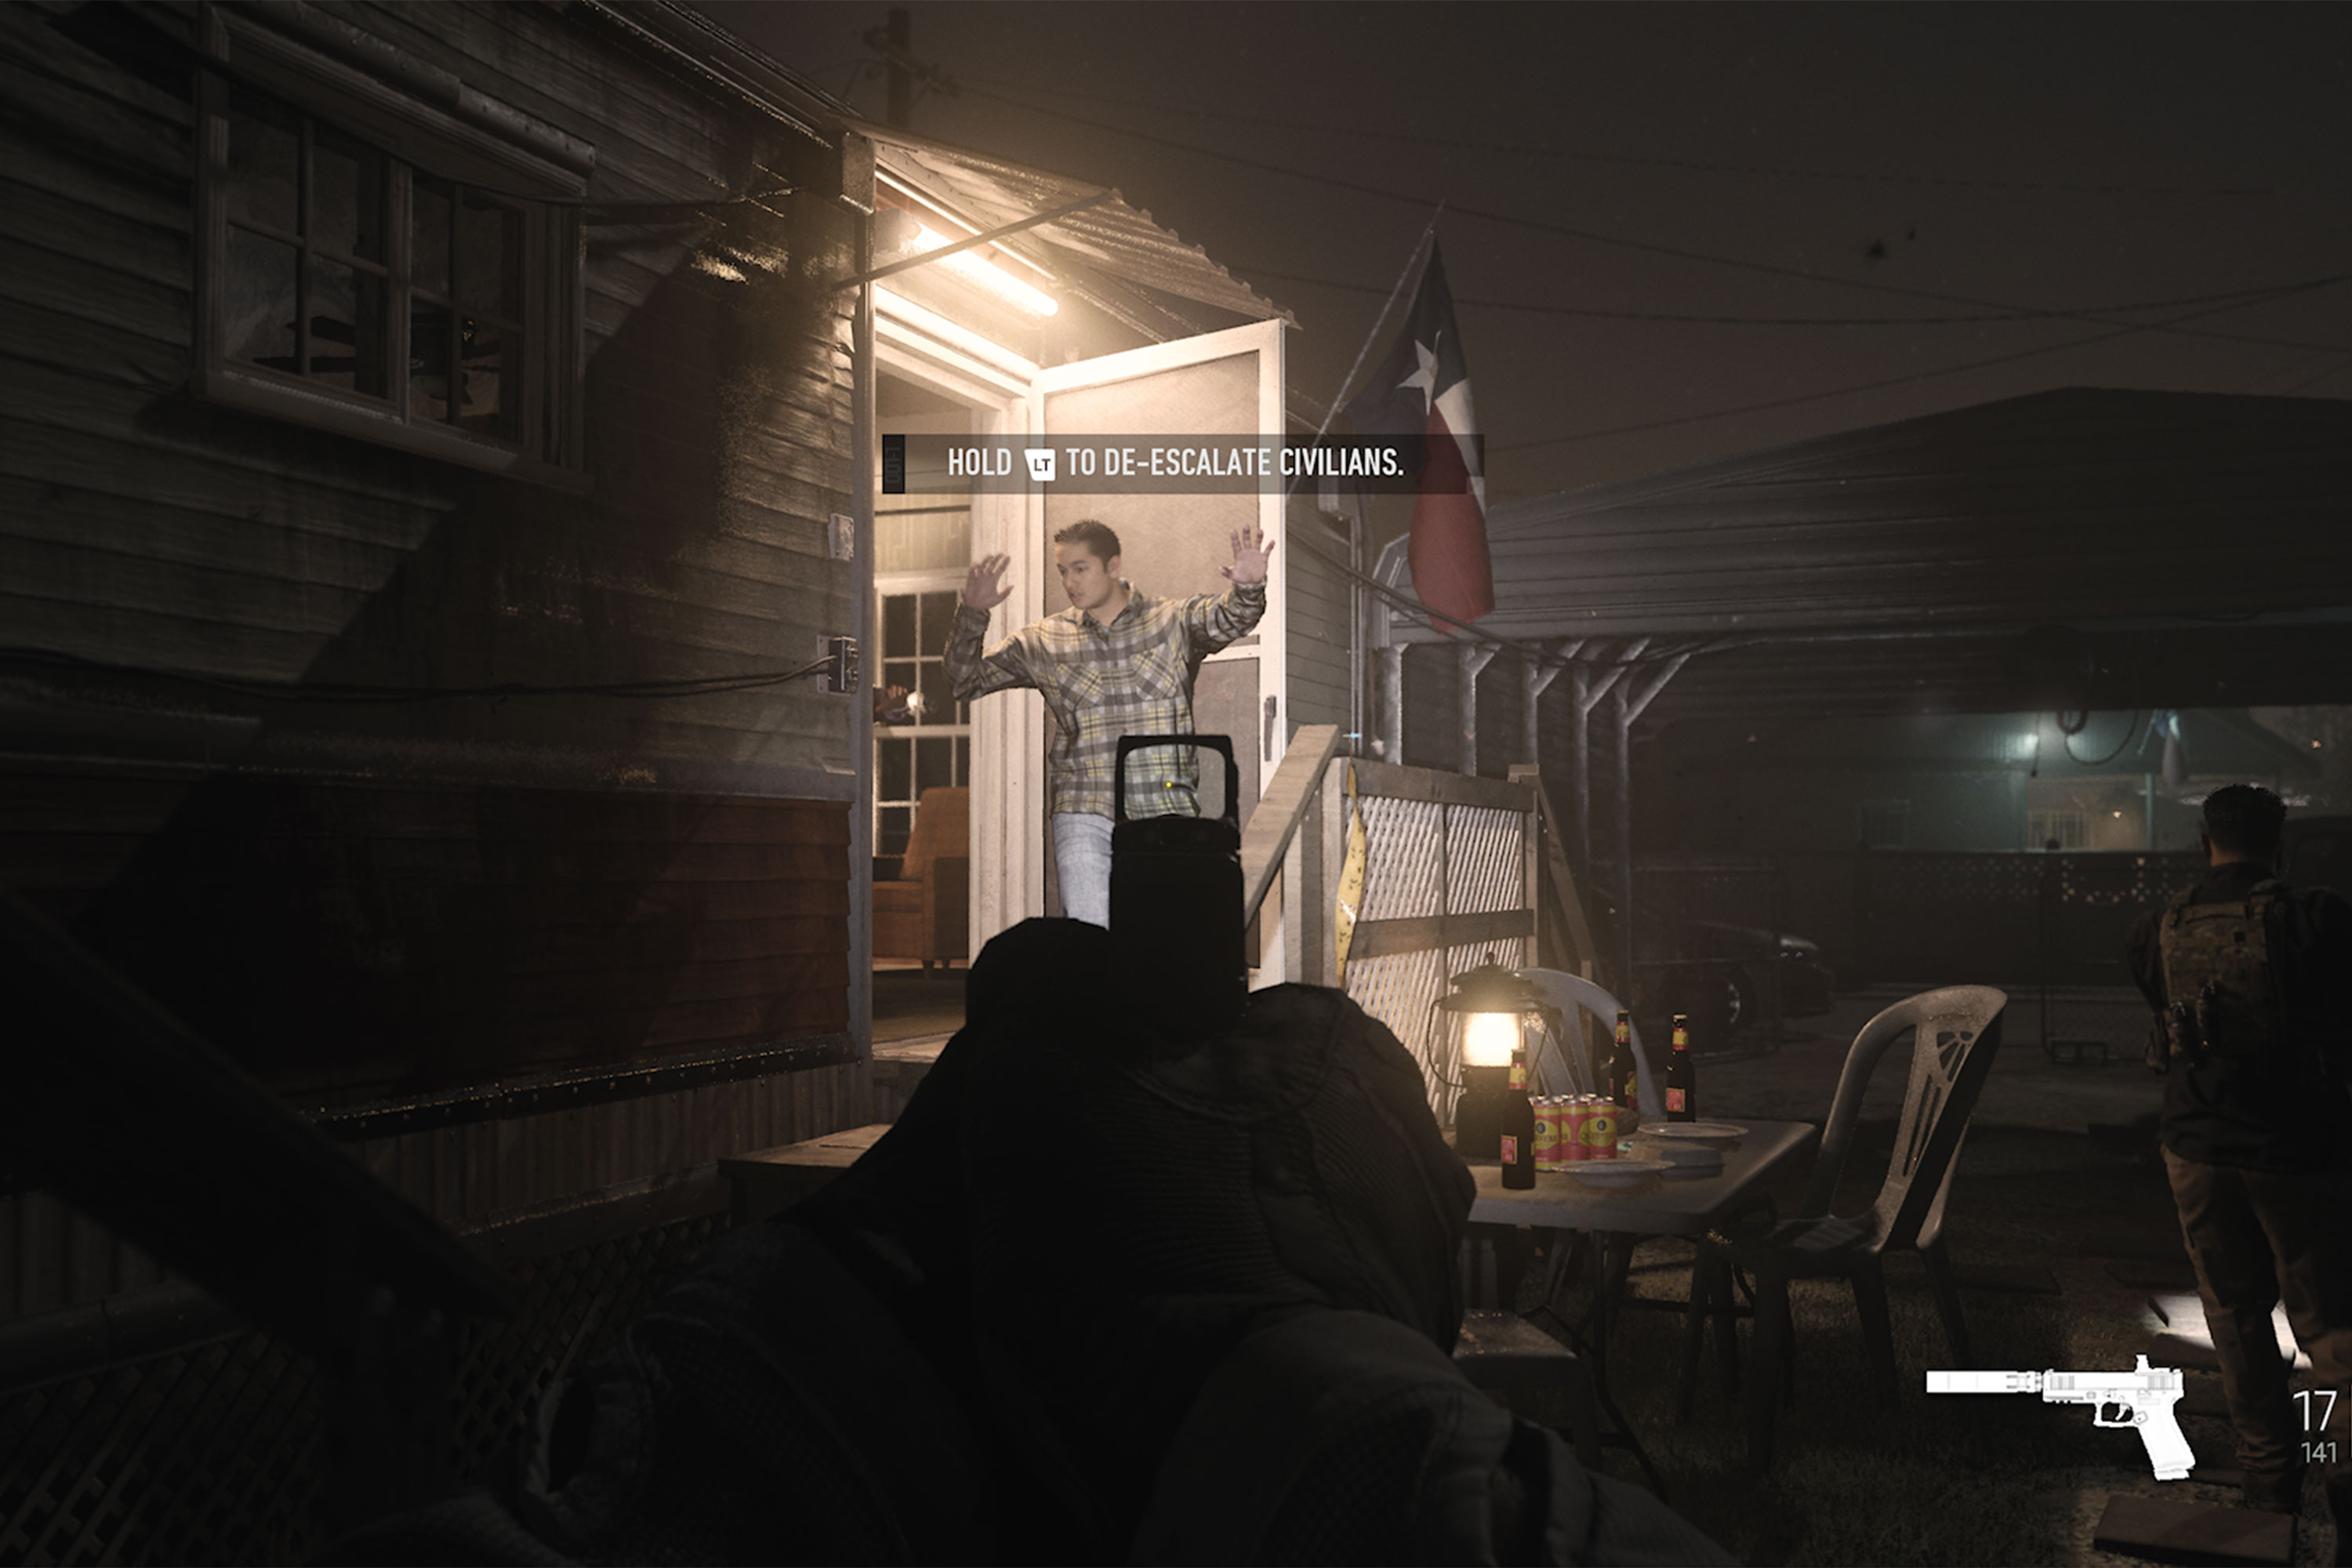 Una imagen de Modern Warfare 2 donde el jugador apunta con una pistola a un civil con lectura de texto "mantener LT para reducir la escalada de civiles" escrito en pantalla.